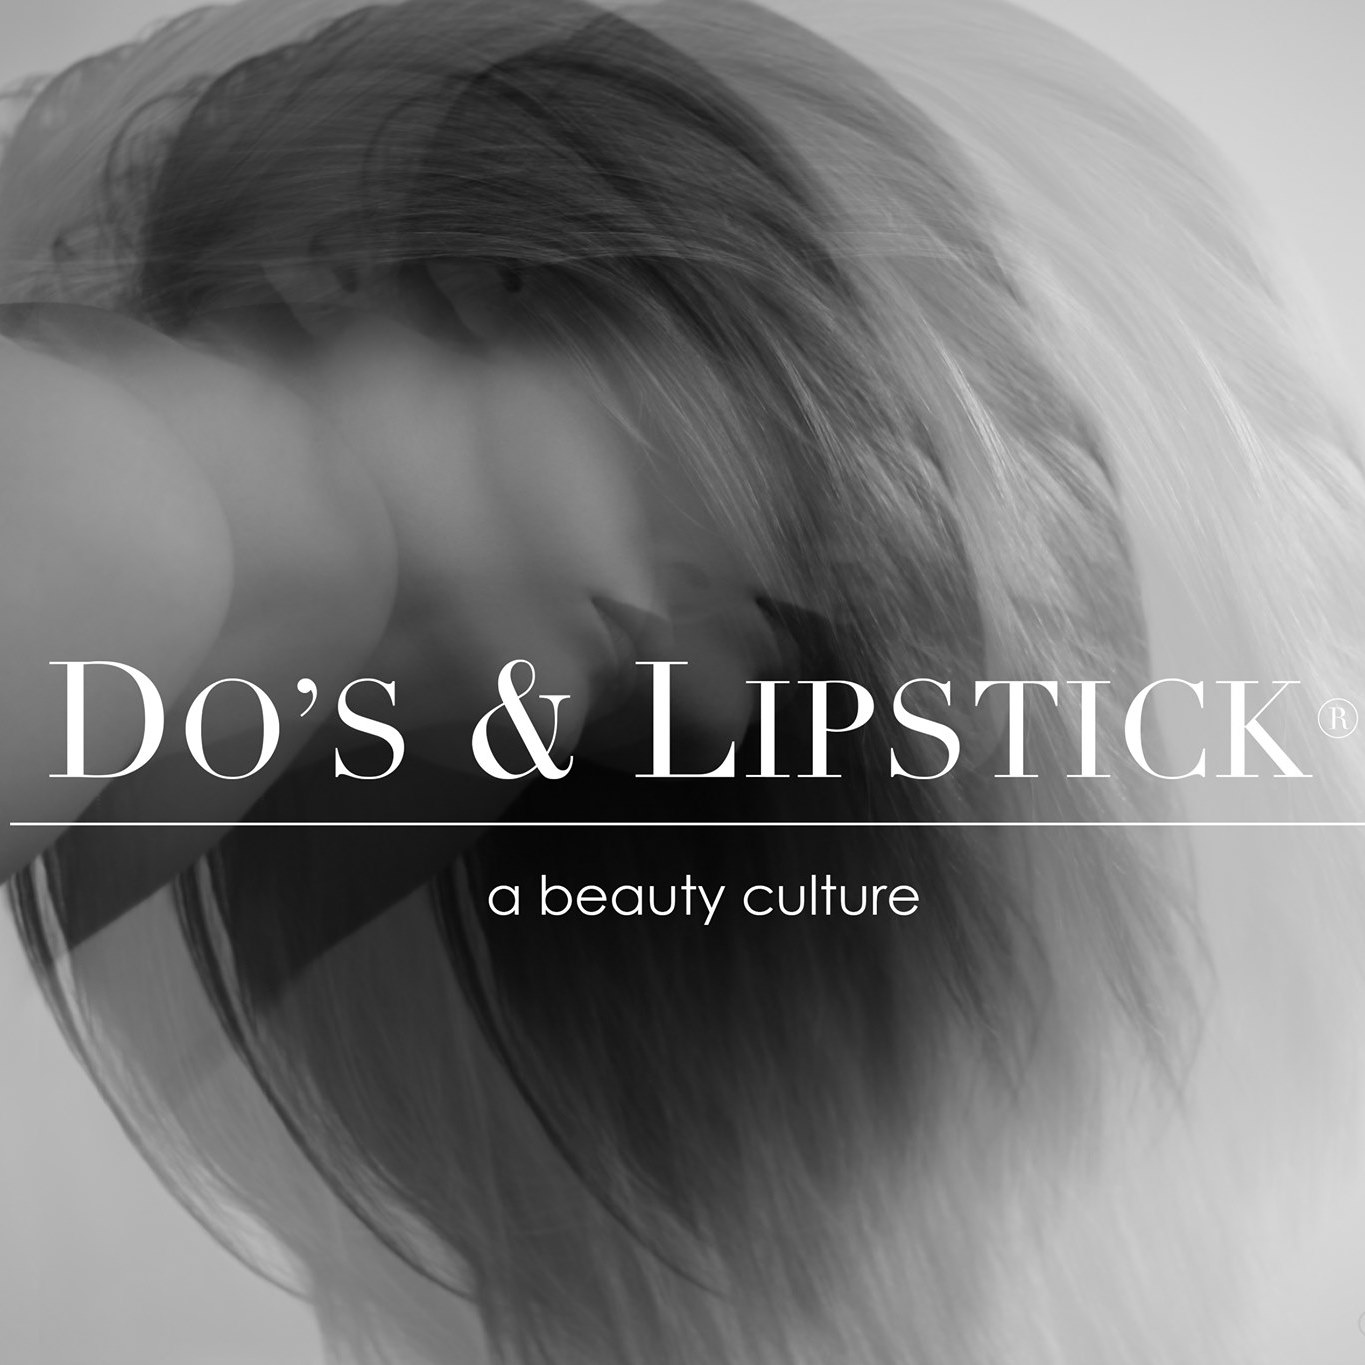 Do's & Lipstick